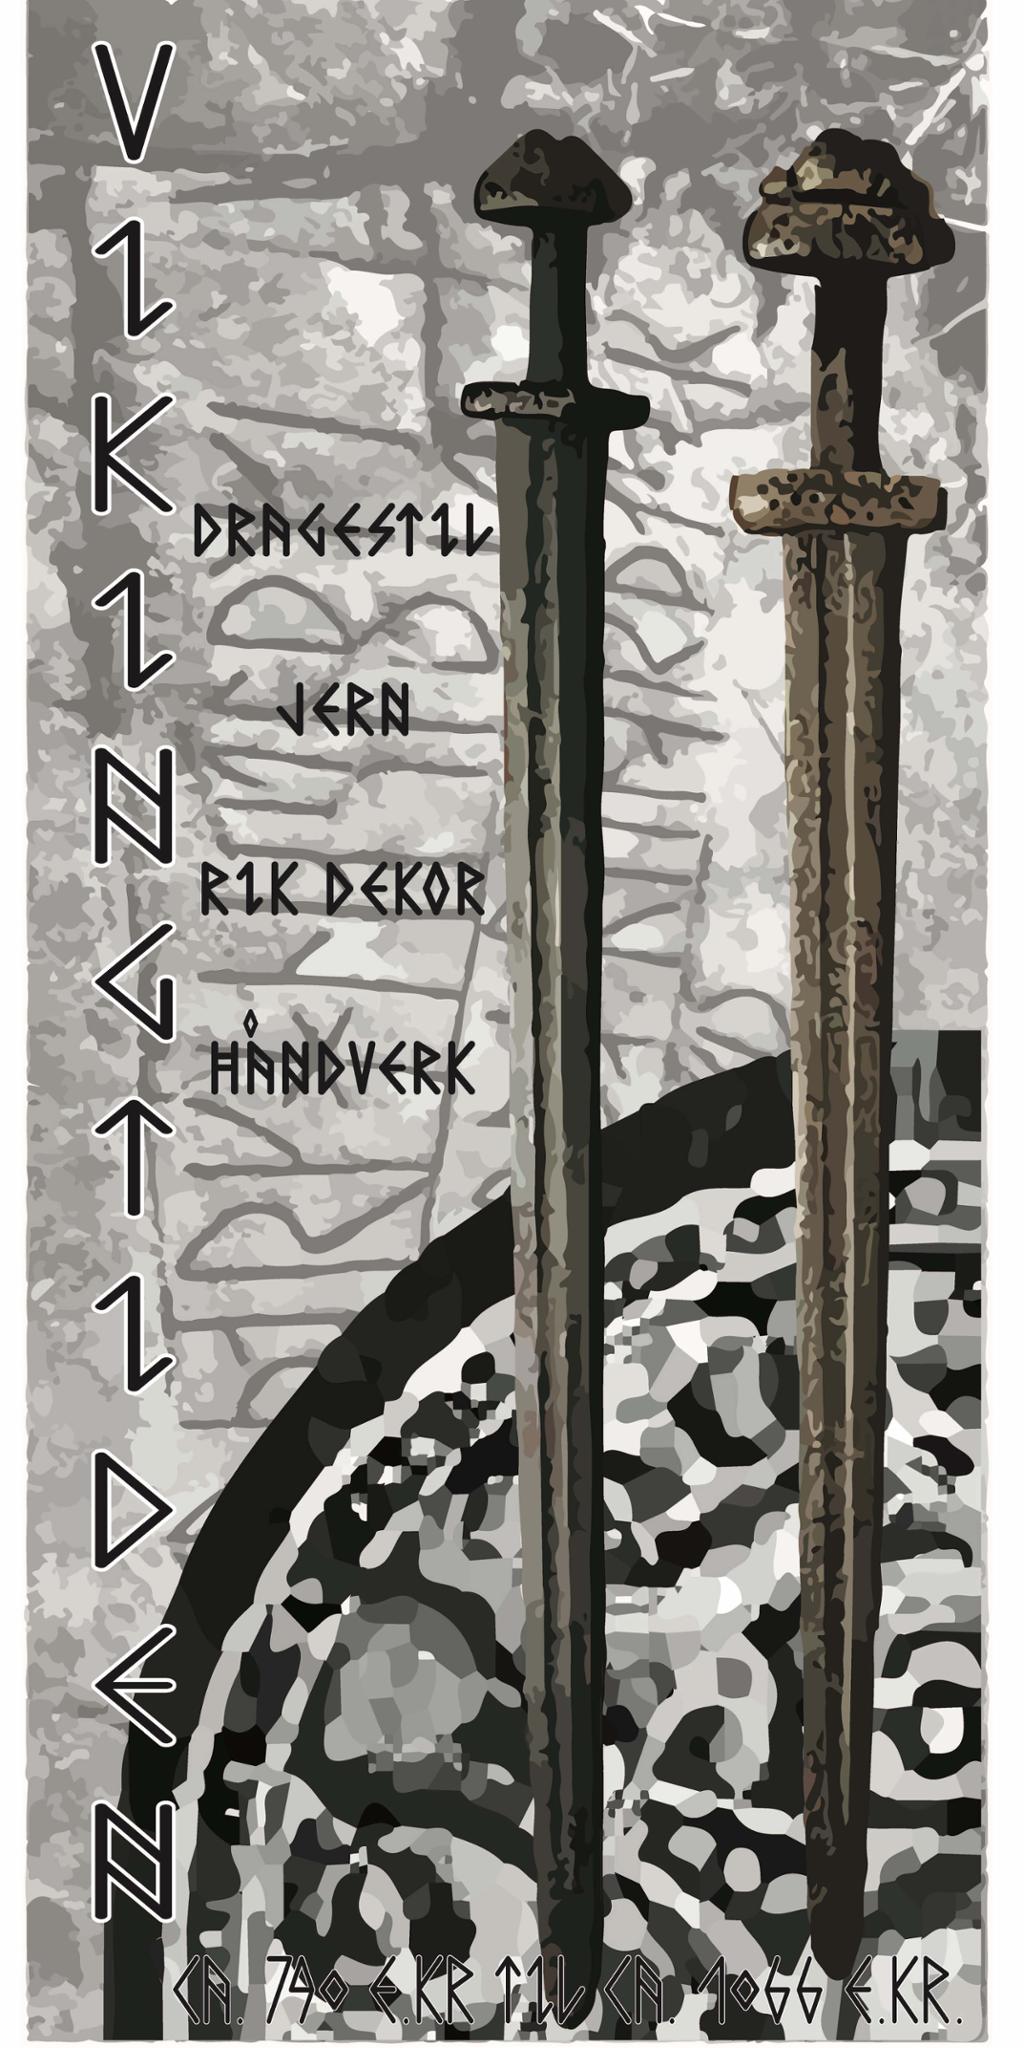 Illustrasjon av to vikingsverd og utsnitt av en brosje. "Vikingtiden", årstall og stikkord med kjennetegn på perioden er gjengitt med runeskrift. 